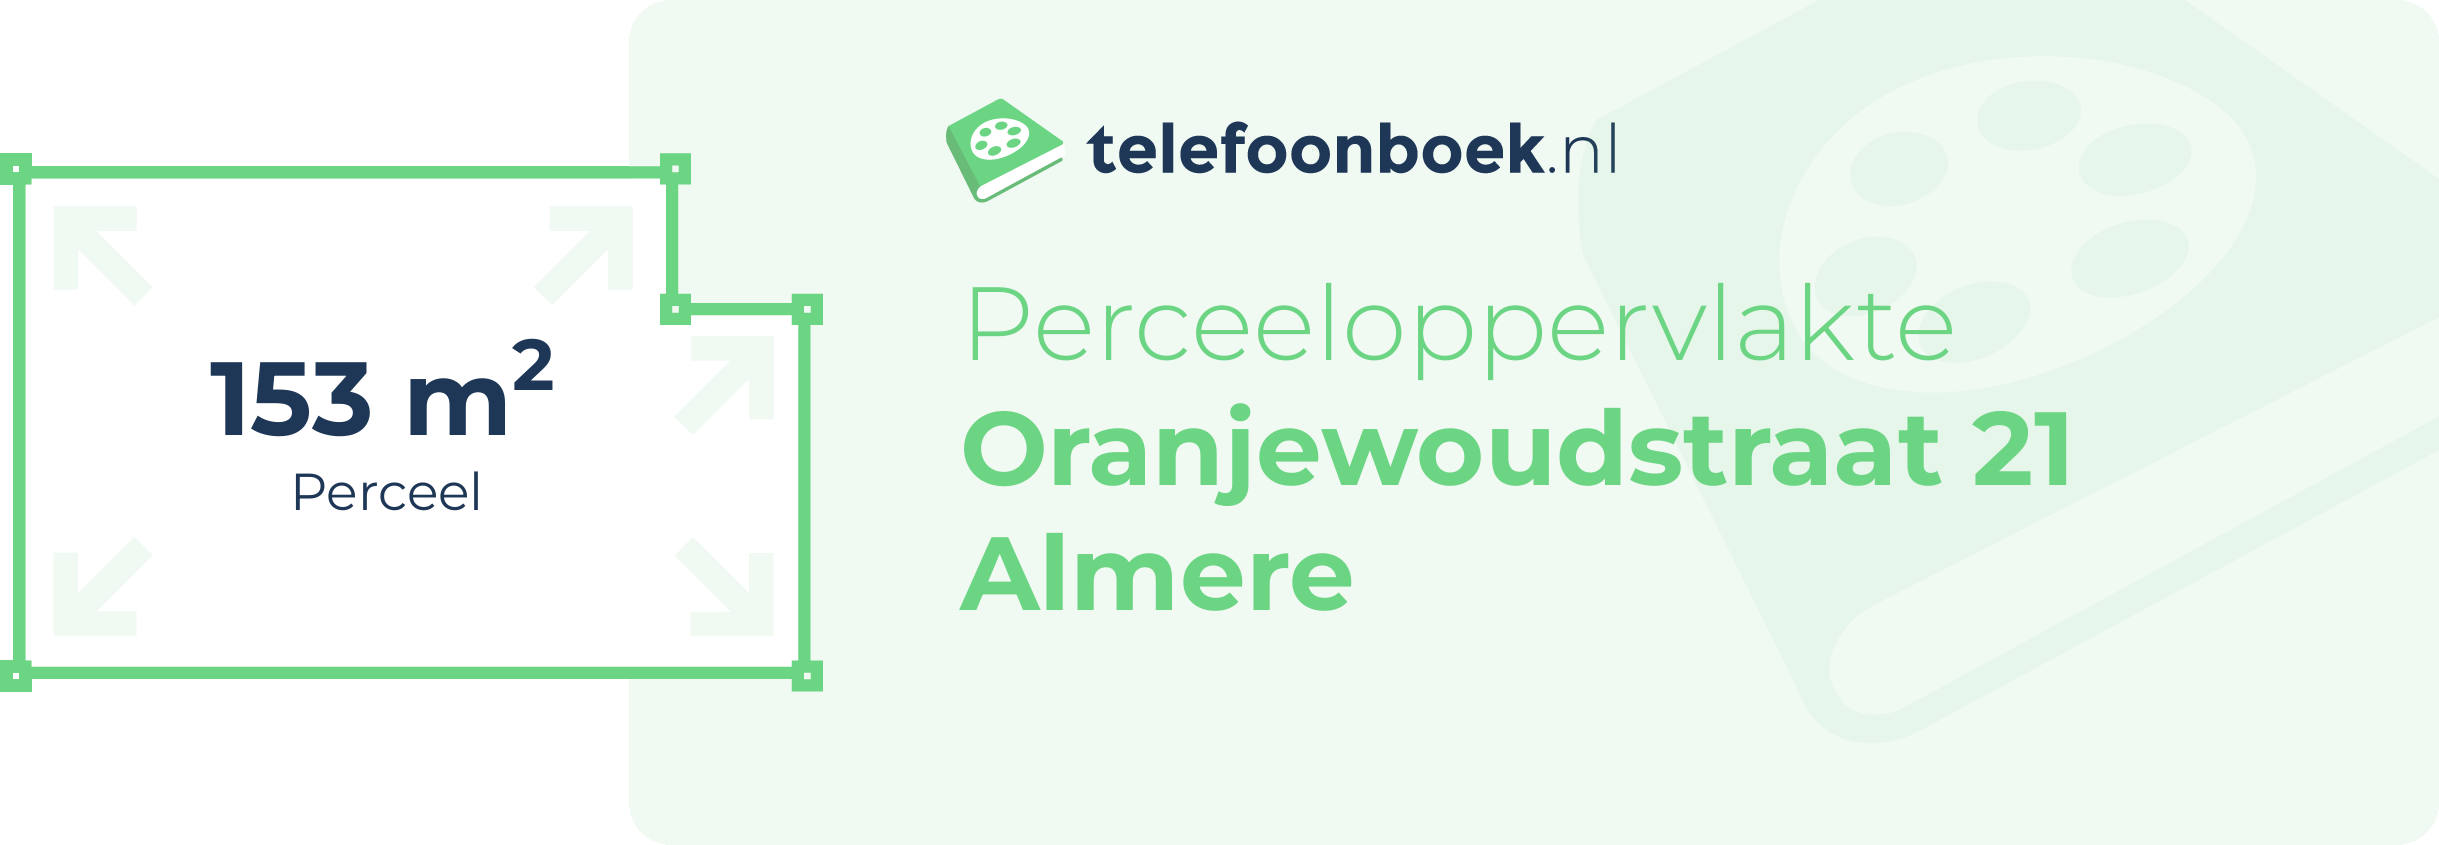 Perceeloppervlakte Oranjewoudstraat 21 Almere